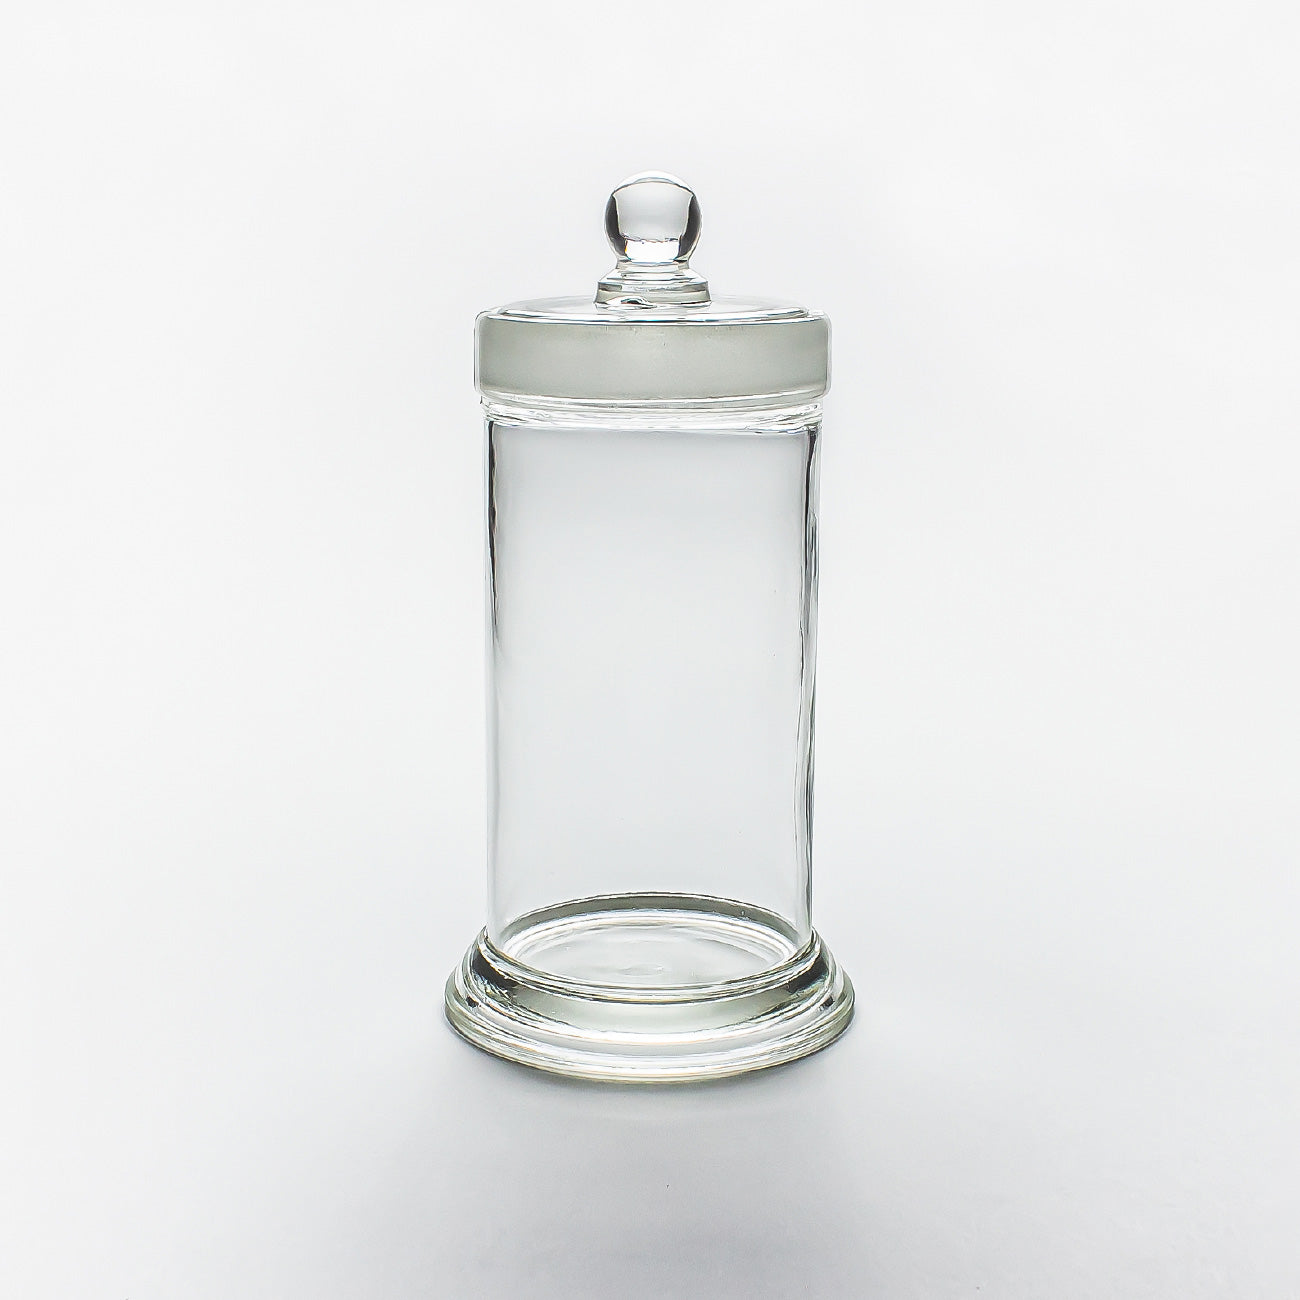 小泉硝子製作所 標本瓶 φ90 mm x H180